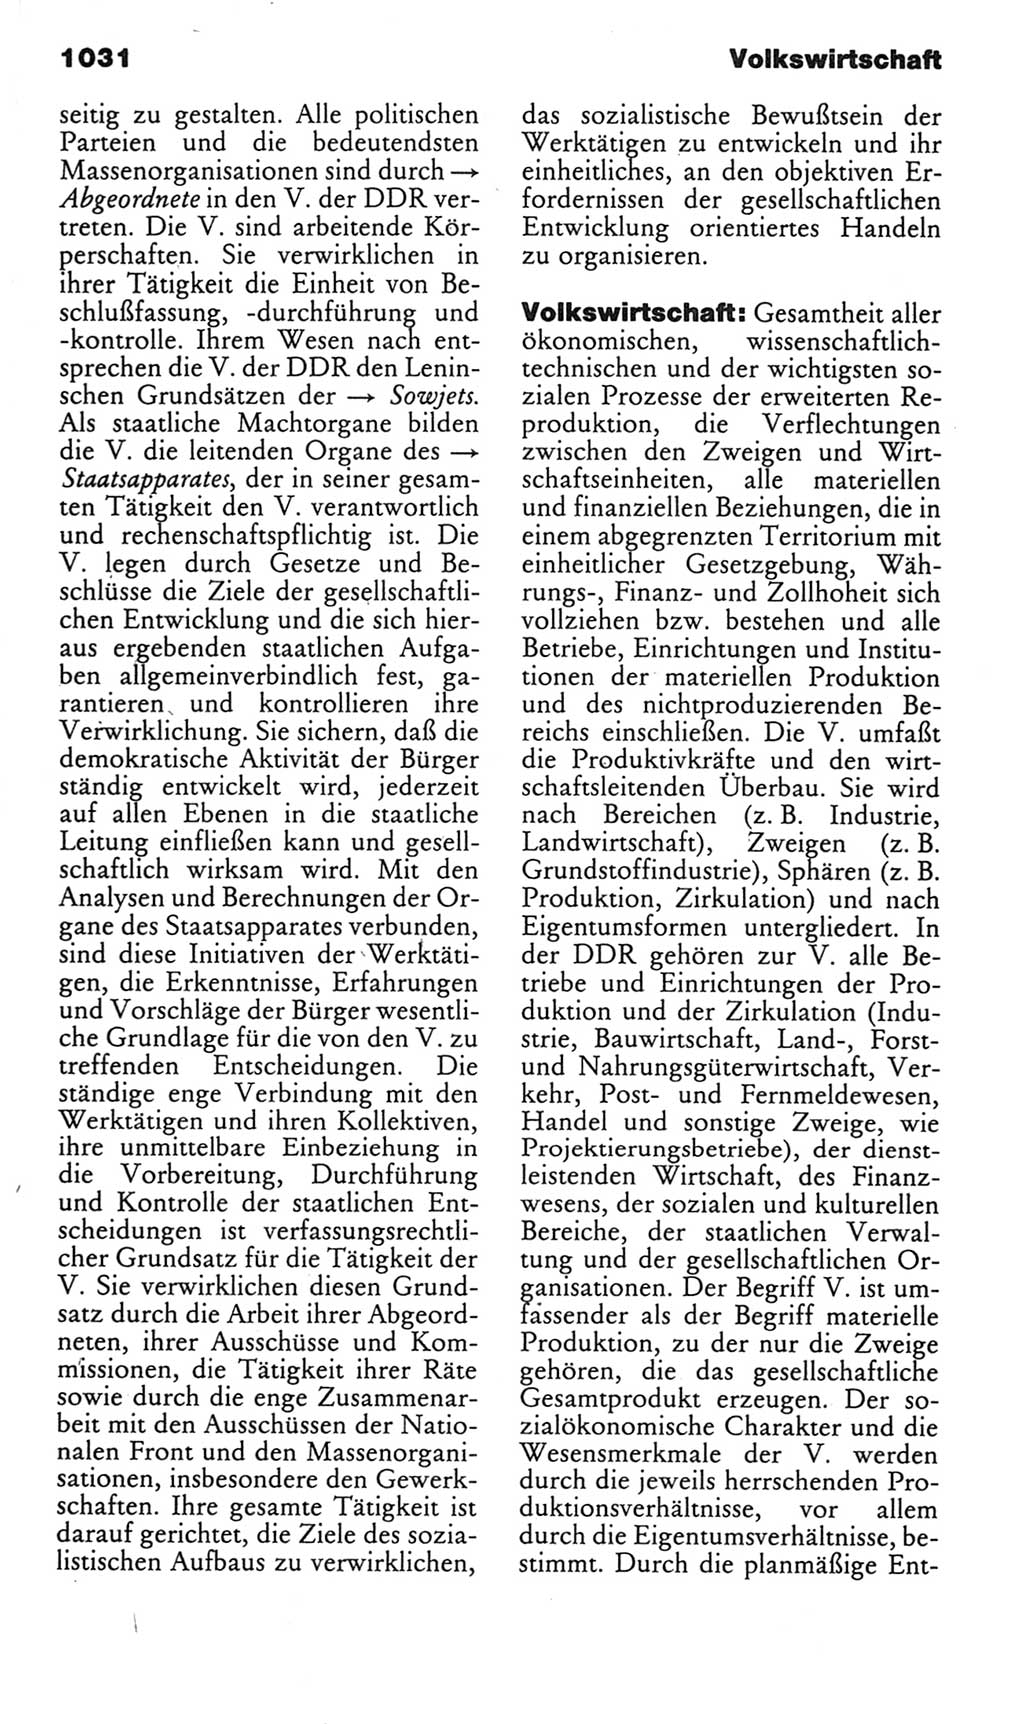 Kleines politisches Wörterbuch [Deutsche Demokratische Republik (DDR)] 1985, Seite 1031 (Kl. pol. Wb. DDR 1985, S. 1031)